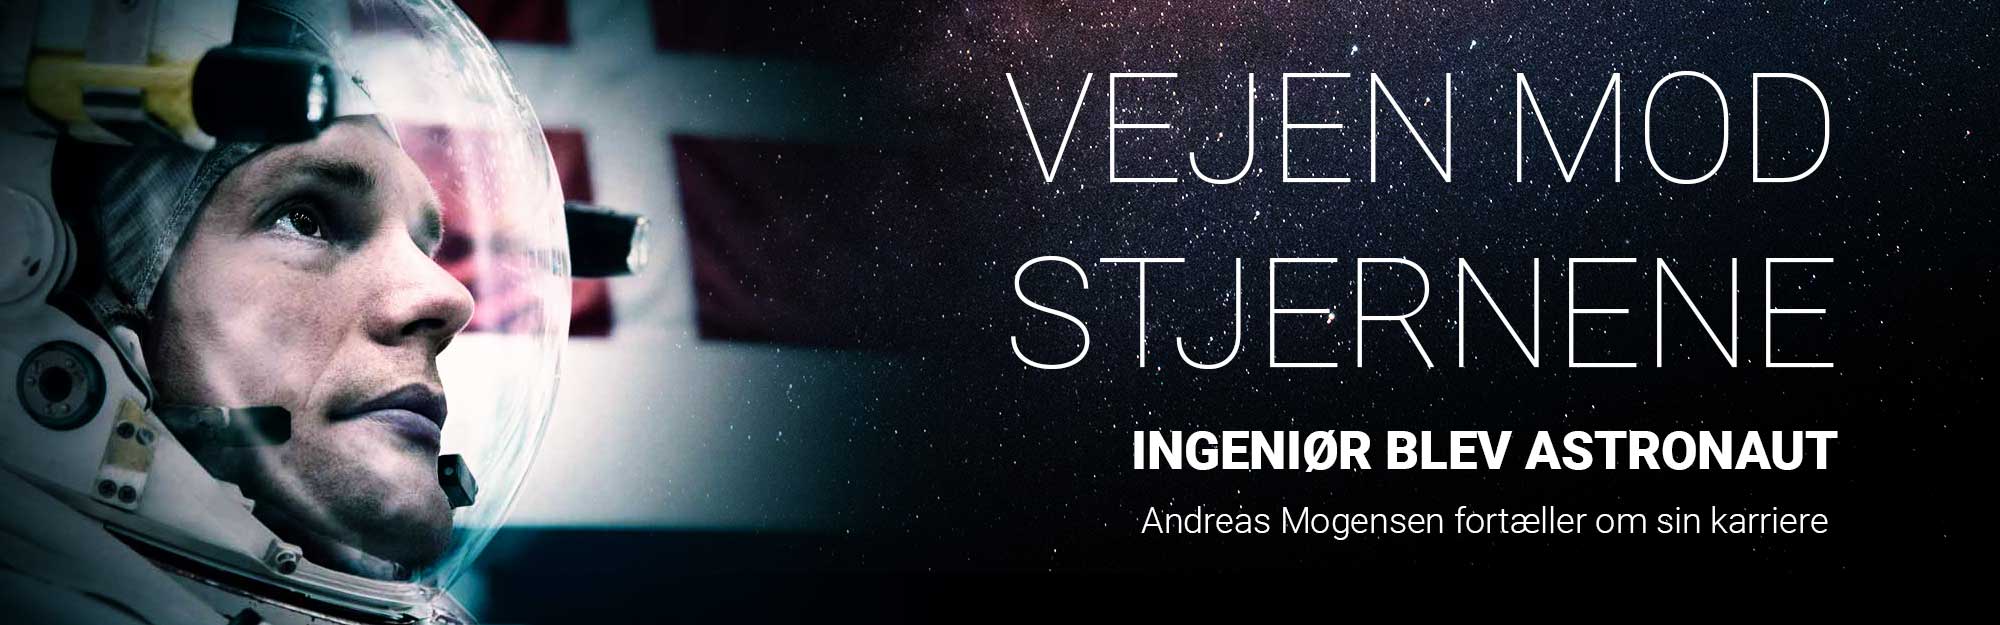 Andreas Mogensen: Vejen til stjernene